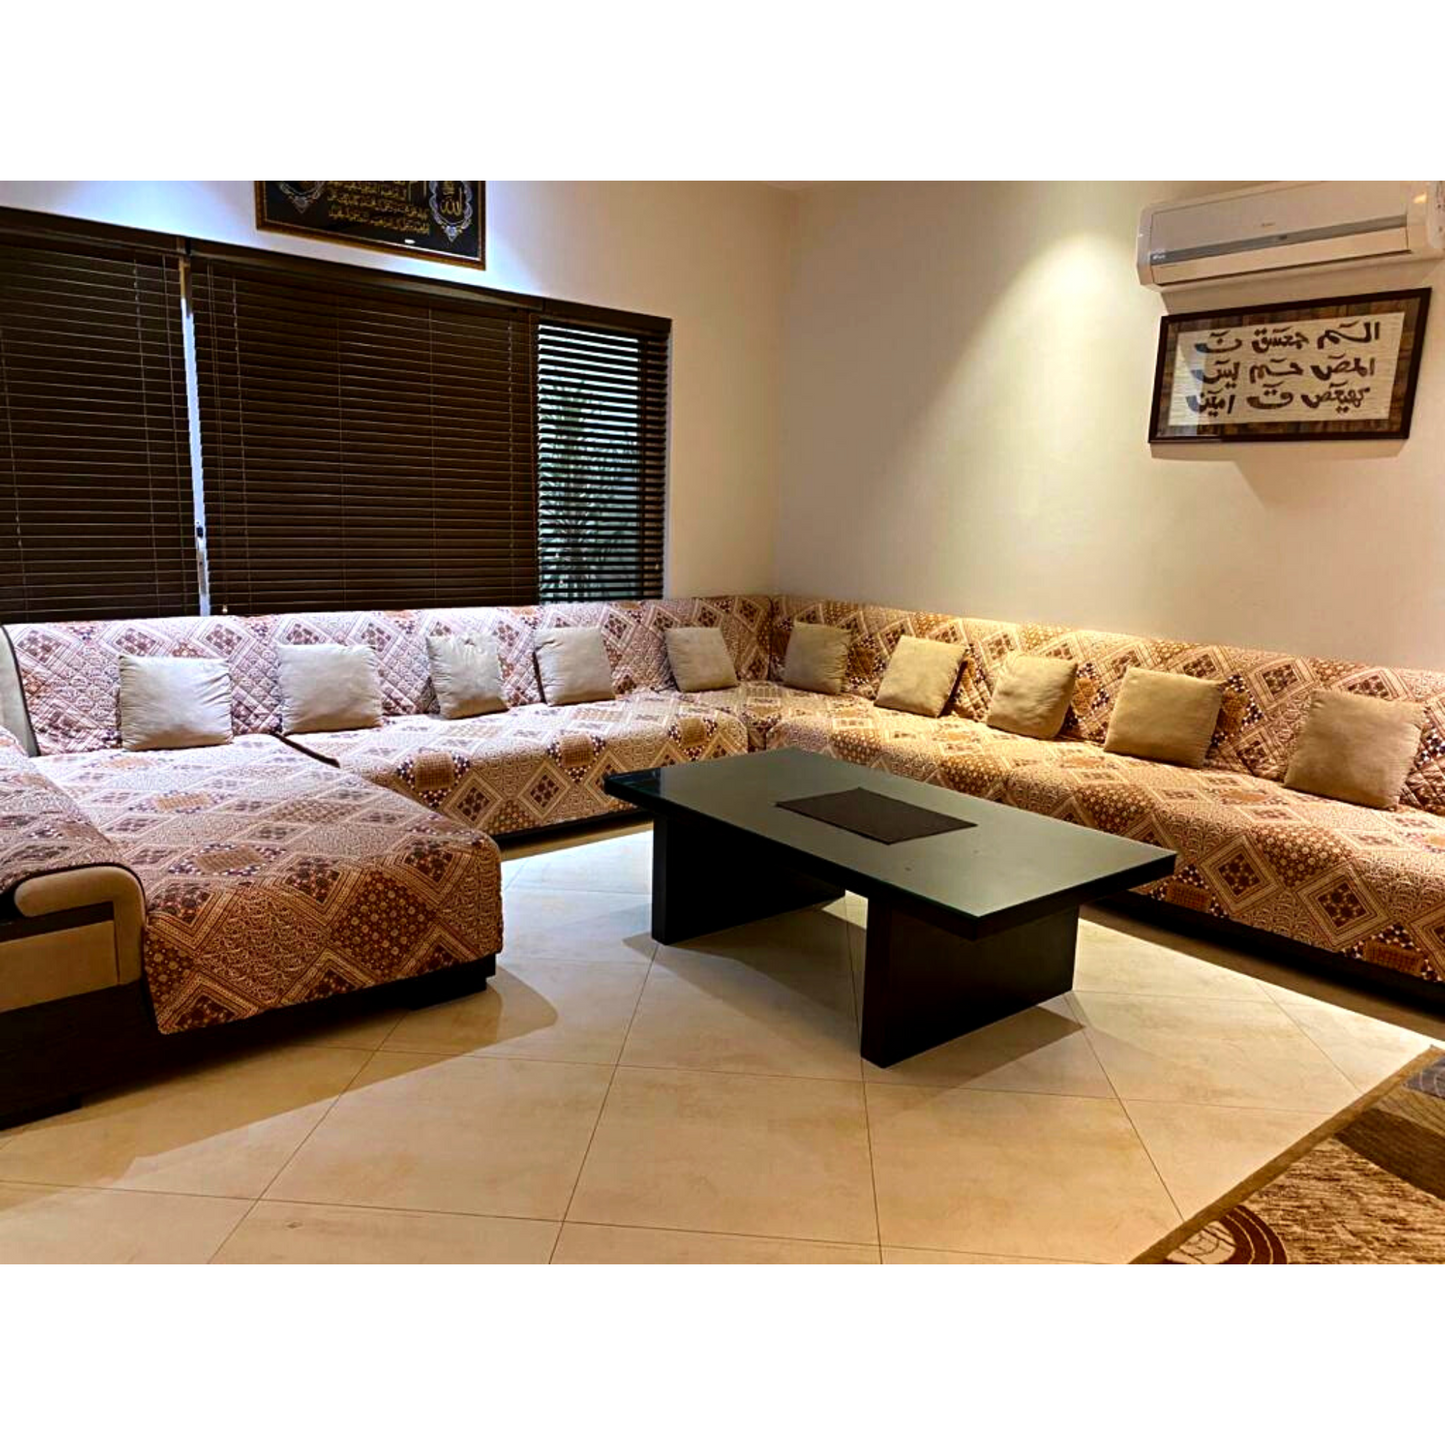 Brown Printed Reversible Sofa Cover Online in Pakistan